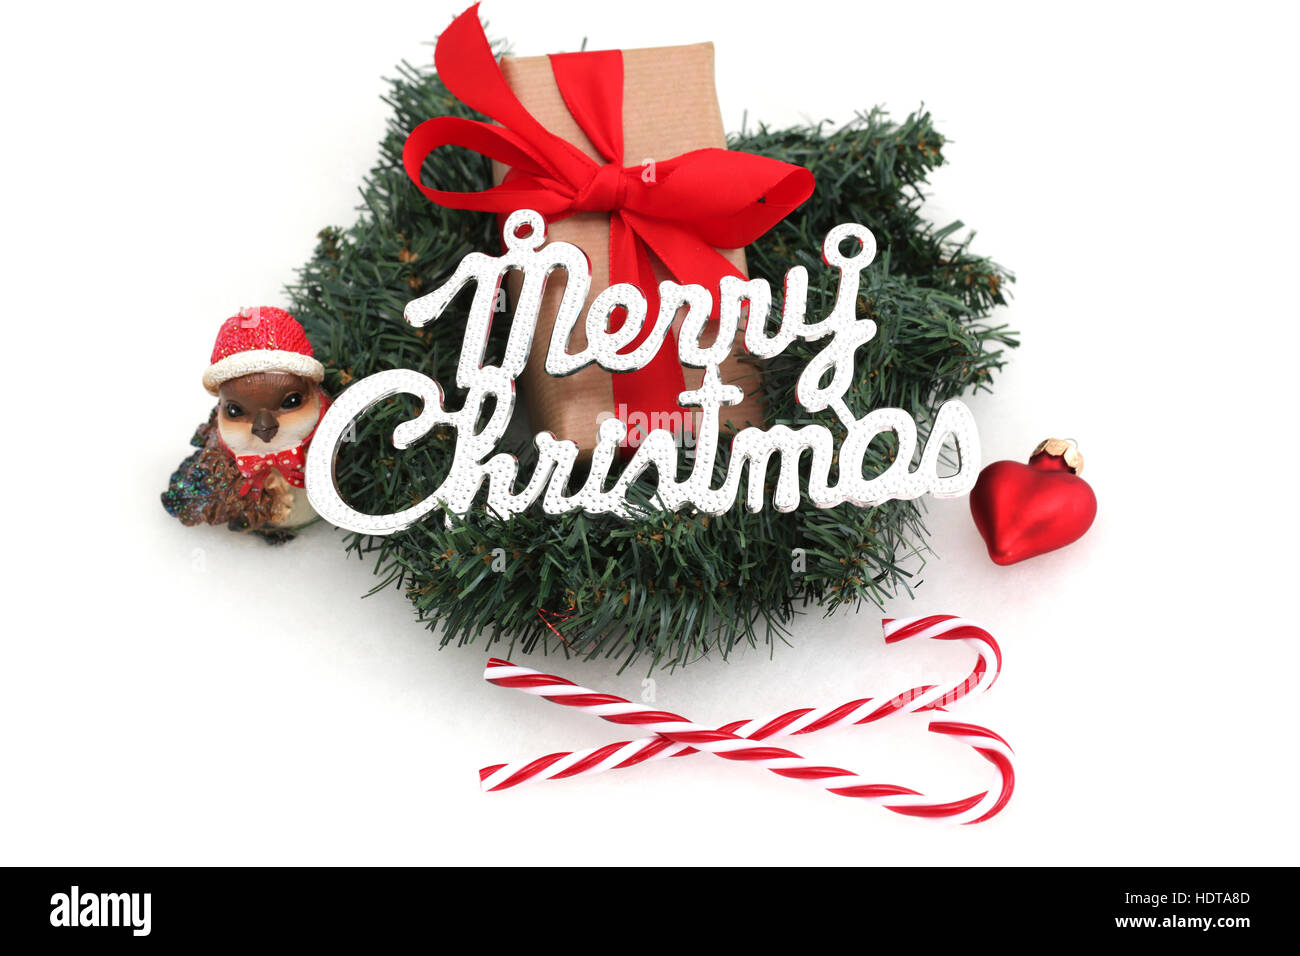 Ein Weihnachtsgeschenk im Kranz mit Weihnachtsschmuck und das Wort Frohe Weihnachten Stockfoto